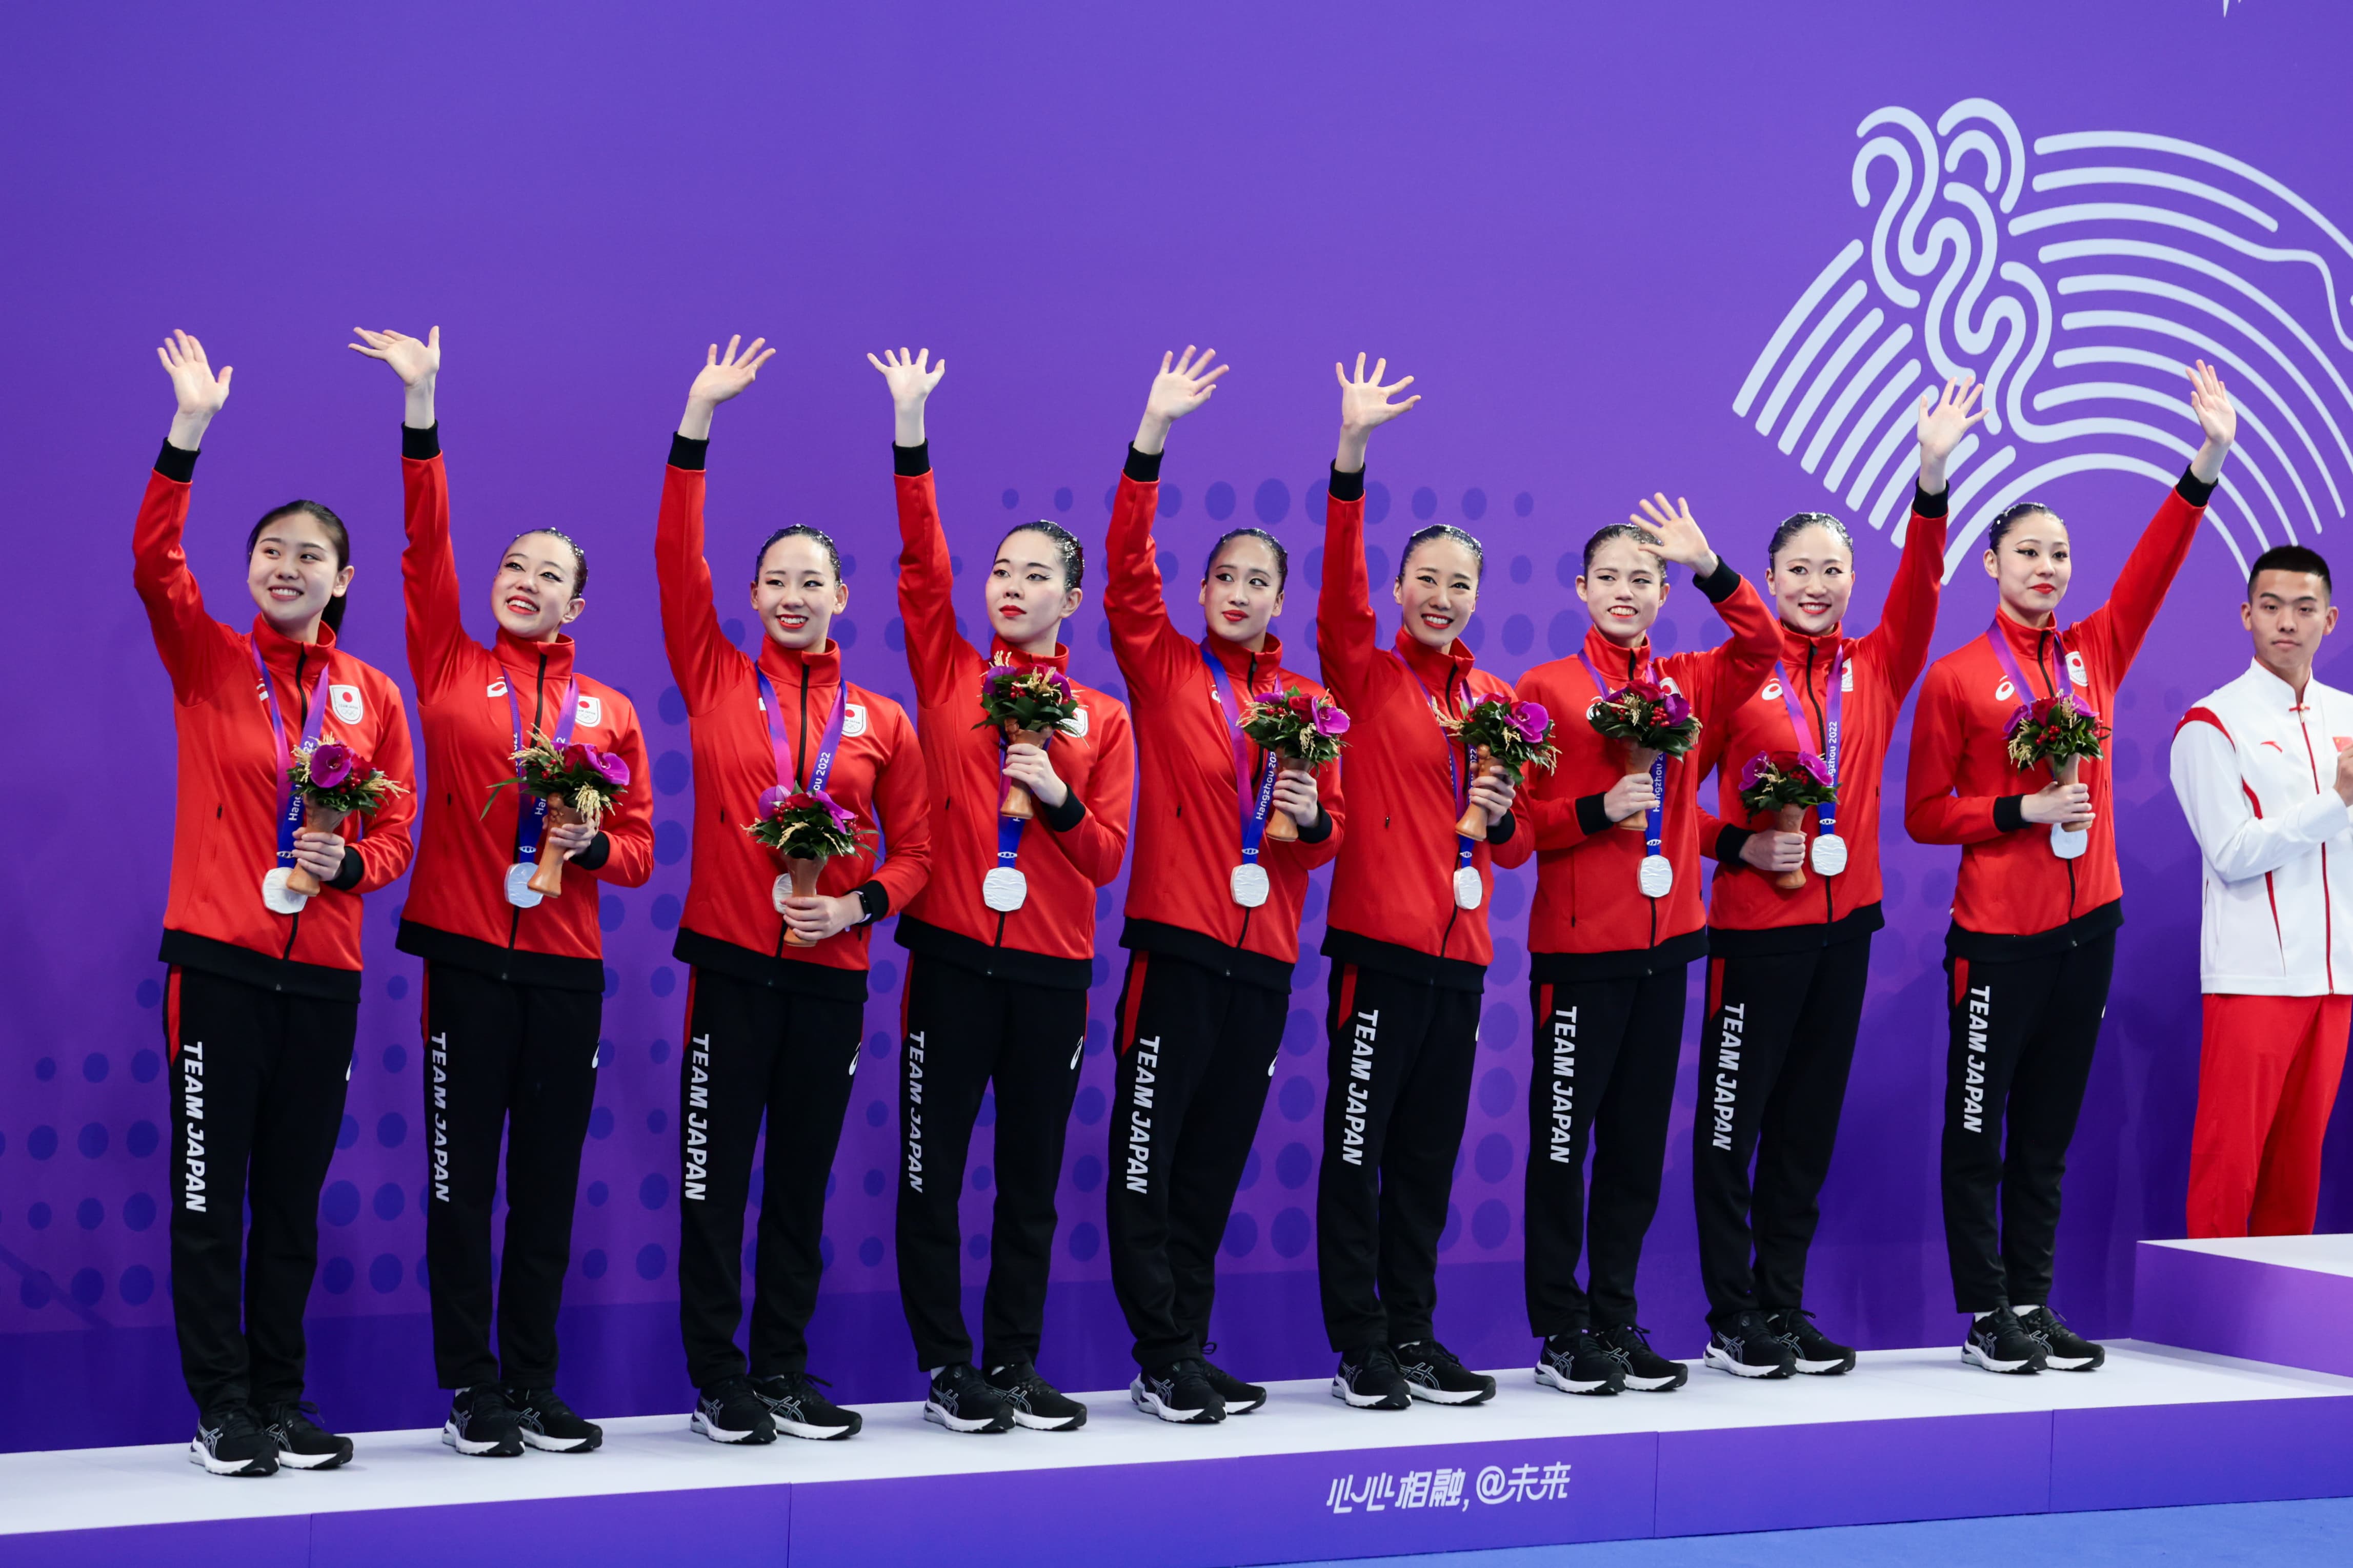 杭州アジア大会 アーティスティックスイミングで銀メダルを獲得した日本チーム